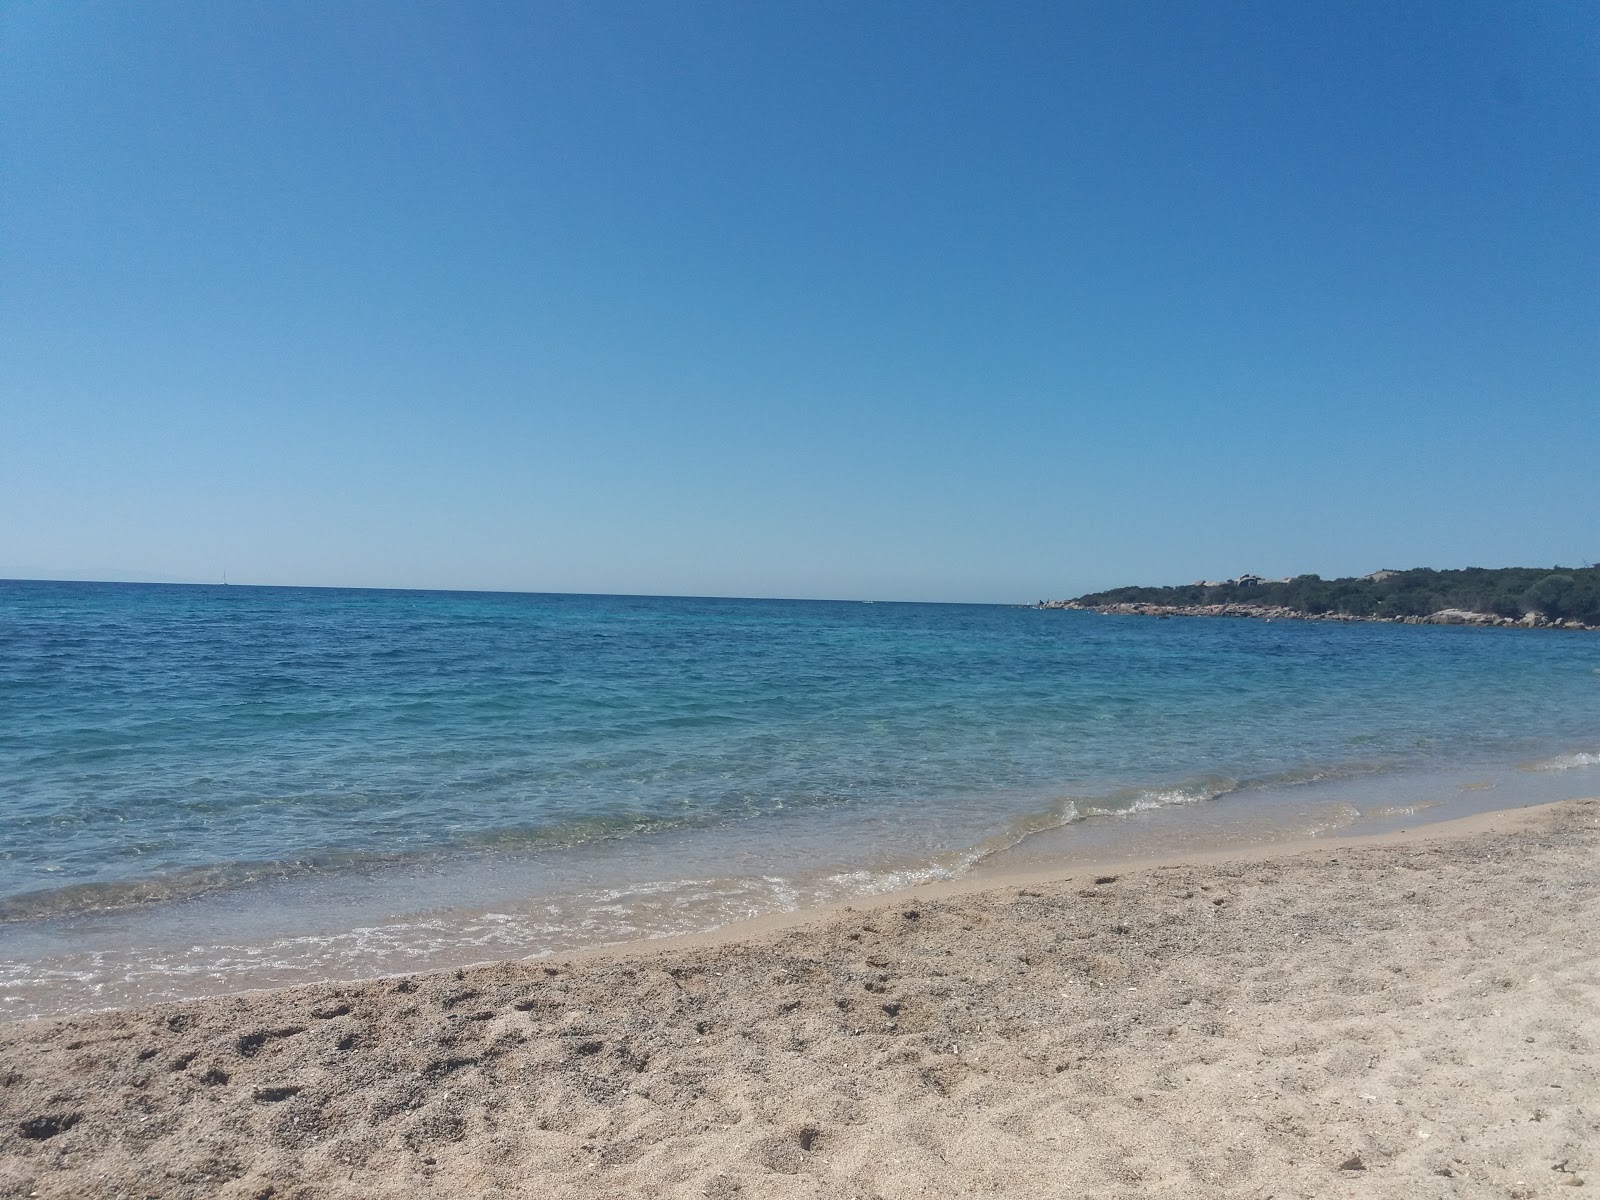 Figari beach'in fotoğrafı doğrudan plaj ile birlikte